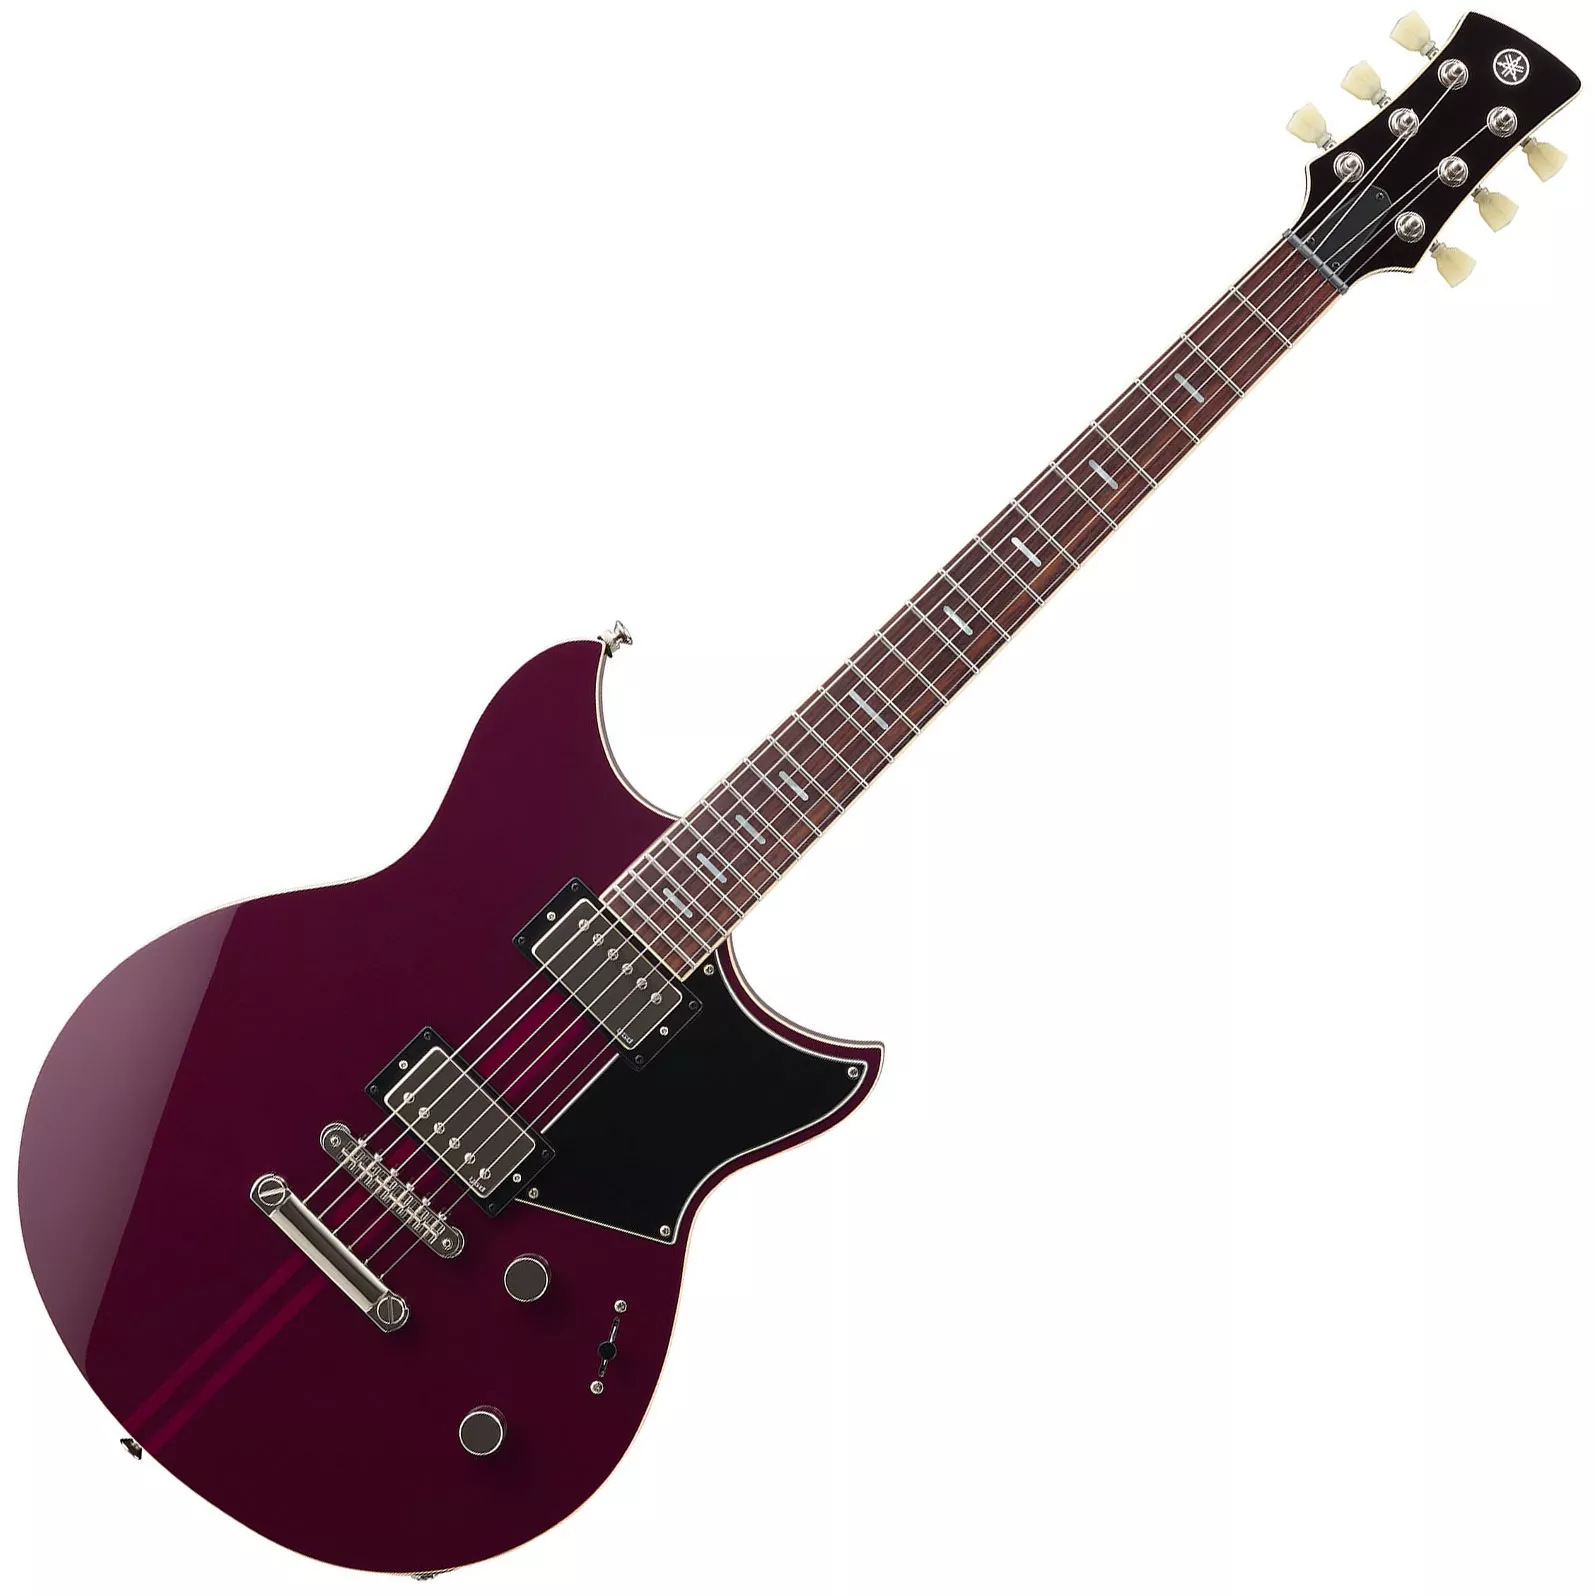 Revstar Standard RSS20 - hot merlot Double cut electric guitar Yamaha